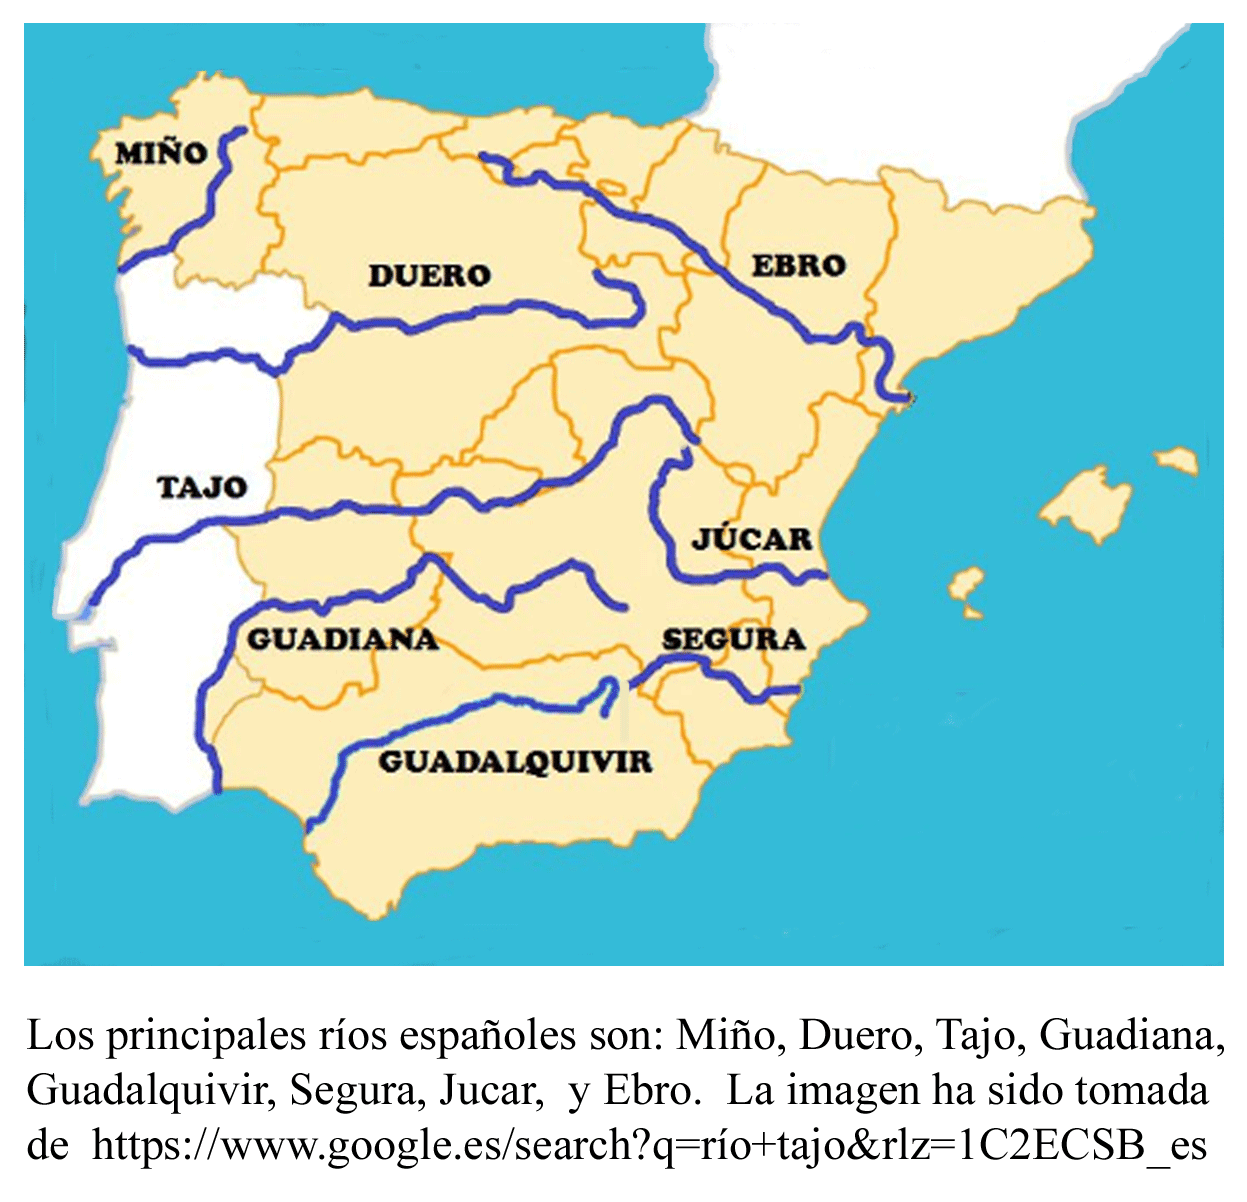 Mapa De Espana Y Portugal Por Provincias Mapa De Rios Images | Images ...